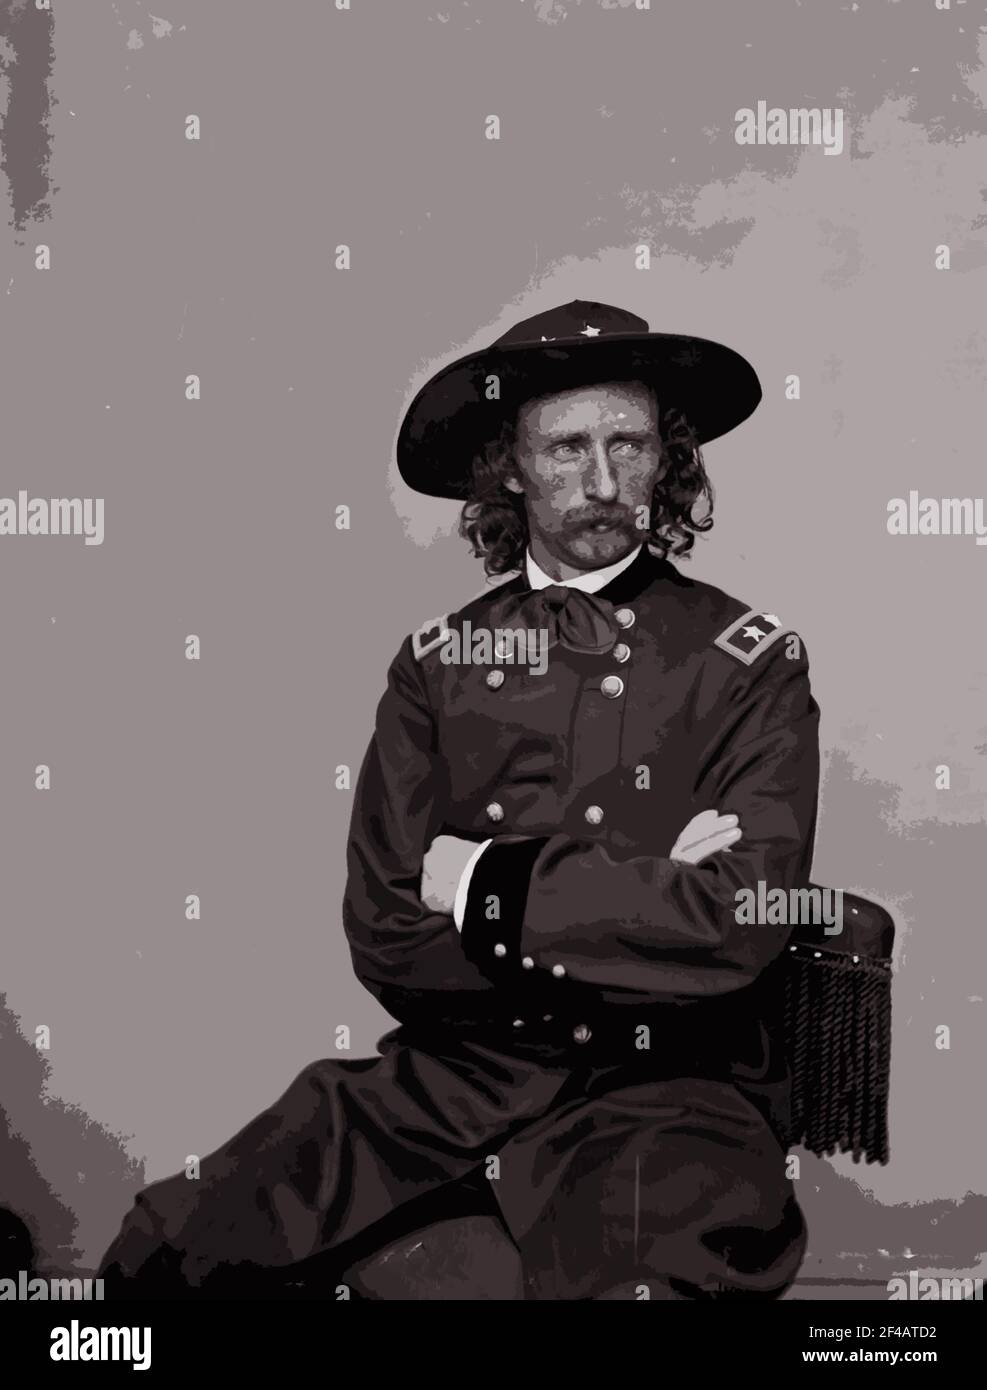 Una fotografia in studio del 1885 del maggiore Custer generale George Armstrong è stata modificata con un filtro Photoshop per effetti speciali. Foto Stock